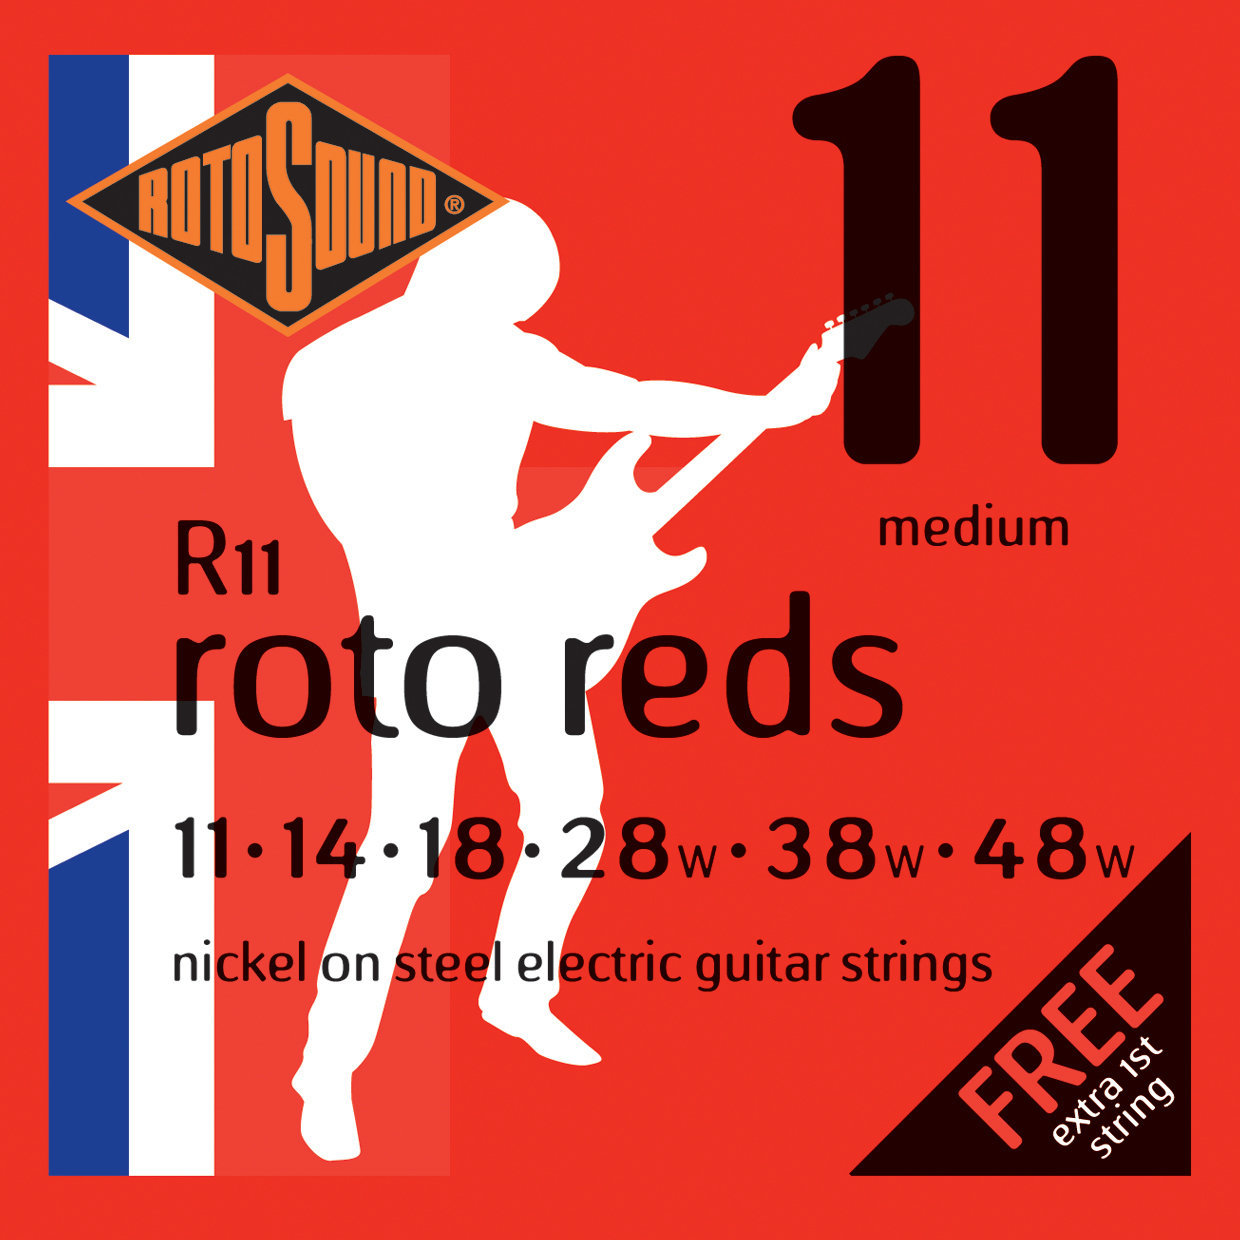 Corzi chitare electrice Rotosound R11